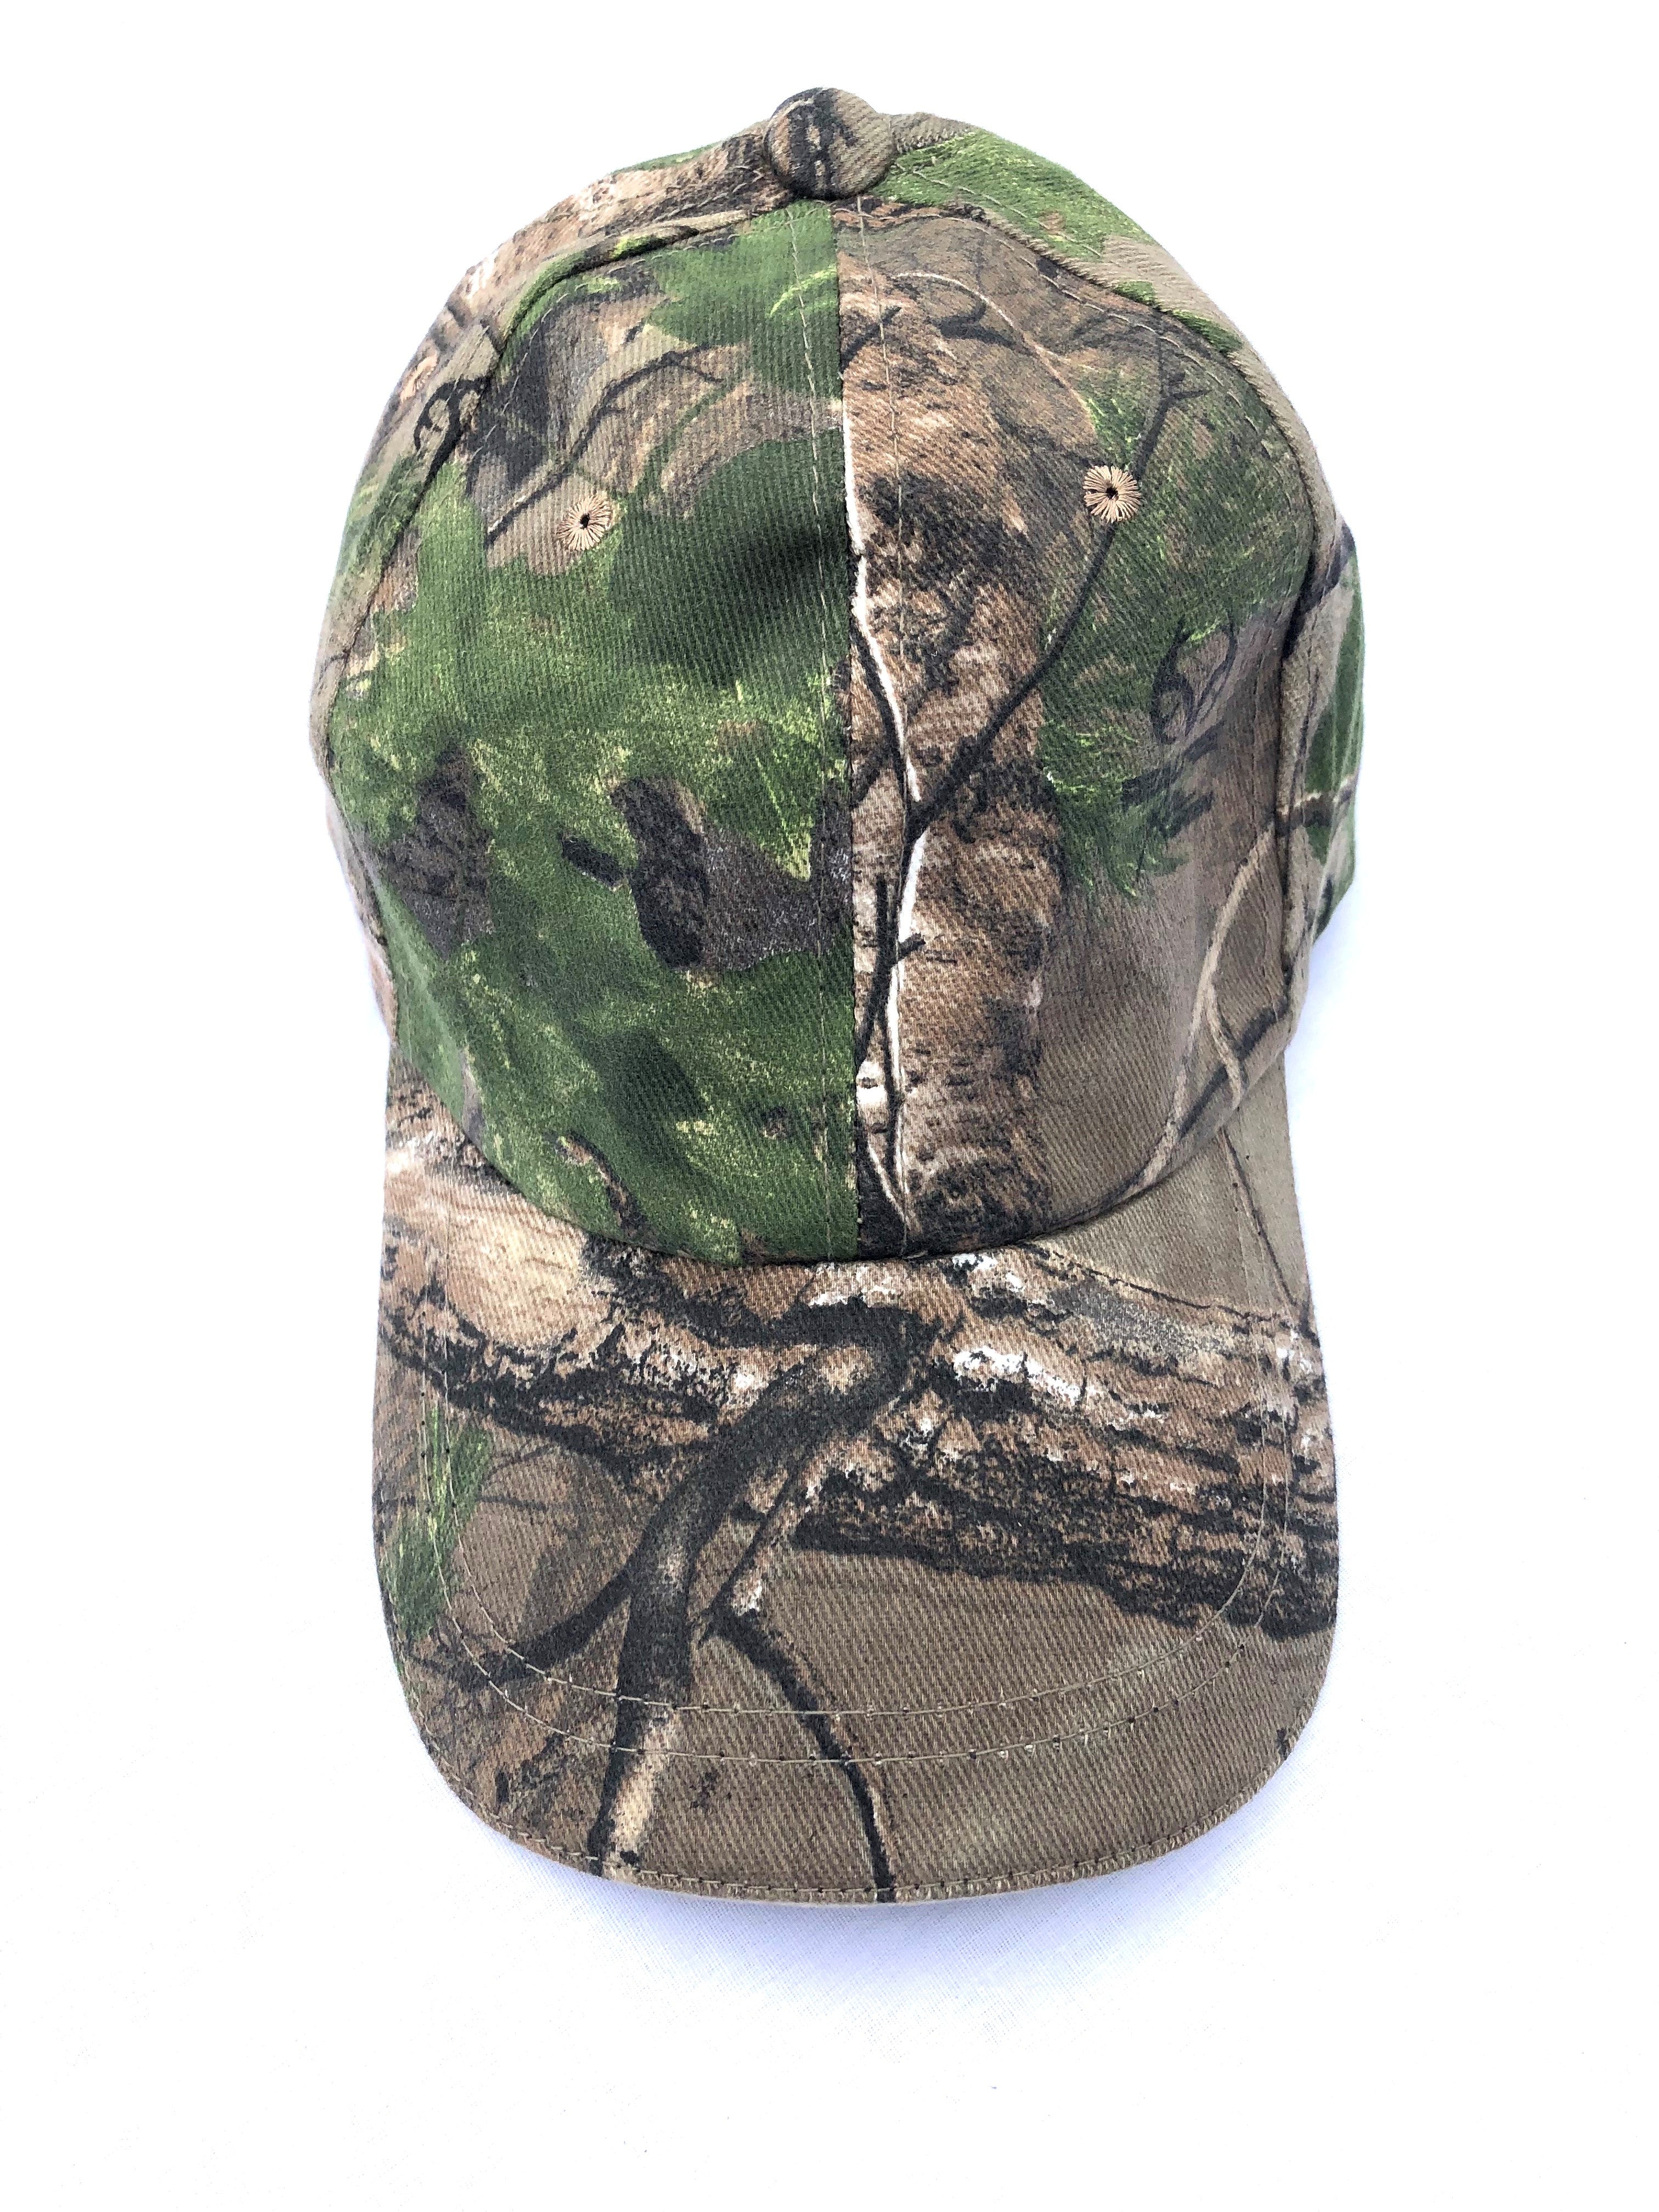 Camouflage Baseball Caps - One Size